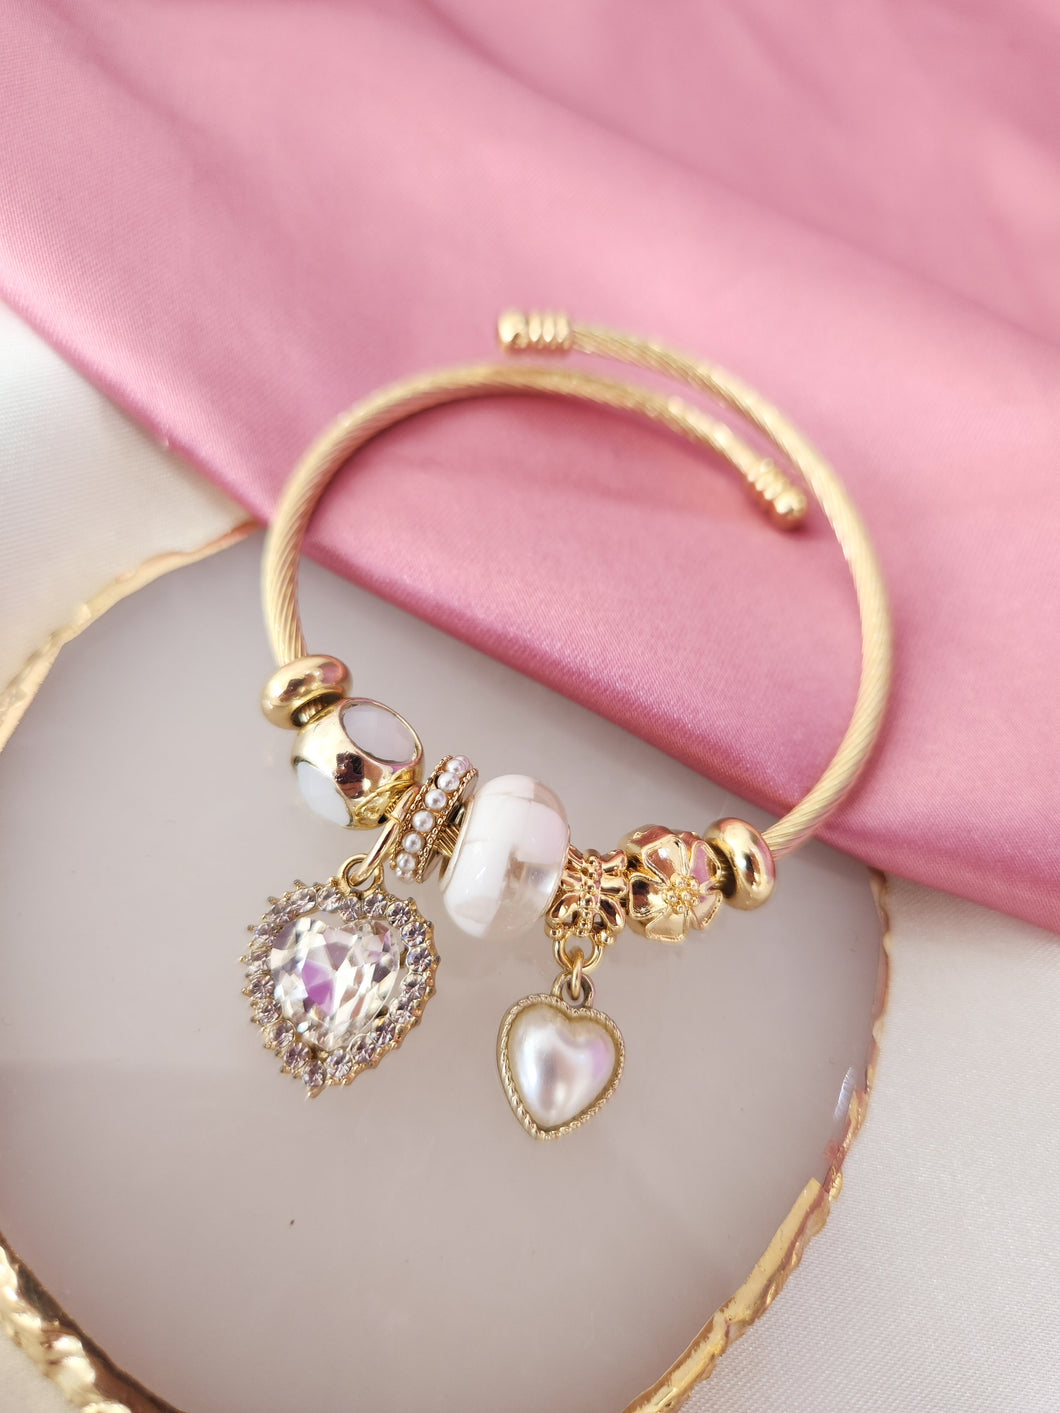 Pulsera tipo Pandora con charms dorada corazon perla #A5